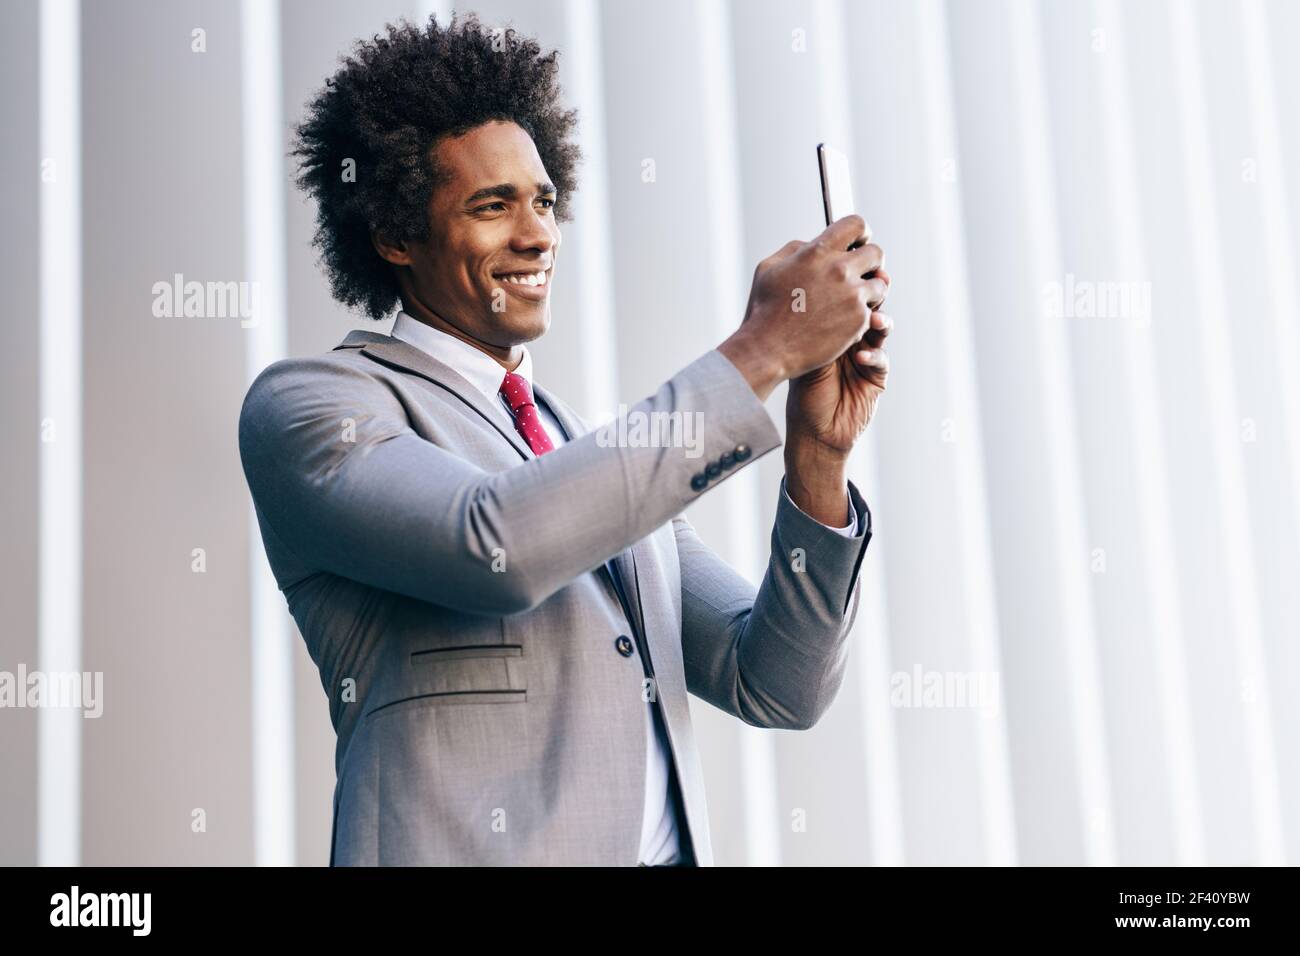 Homme d'affaires noir prenant des photos avec son smartphone près d'un immeuble de bureaux. Homme avec cheveux afro.. Homme d'affaires noir utilisant un smartphone près d'un immeuble de bureaux Banque D'Images